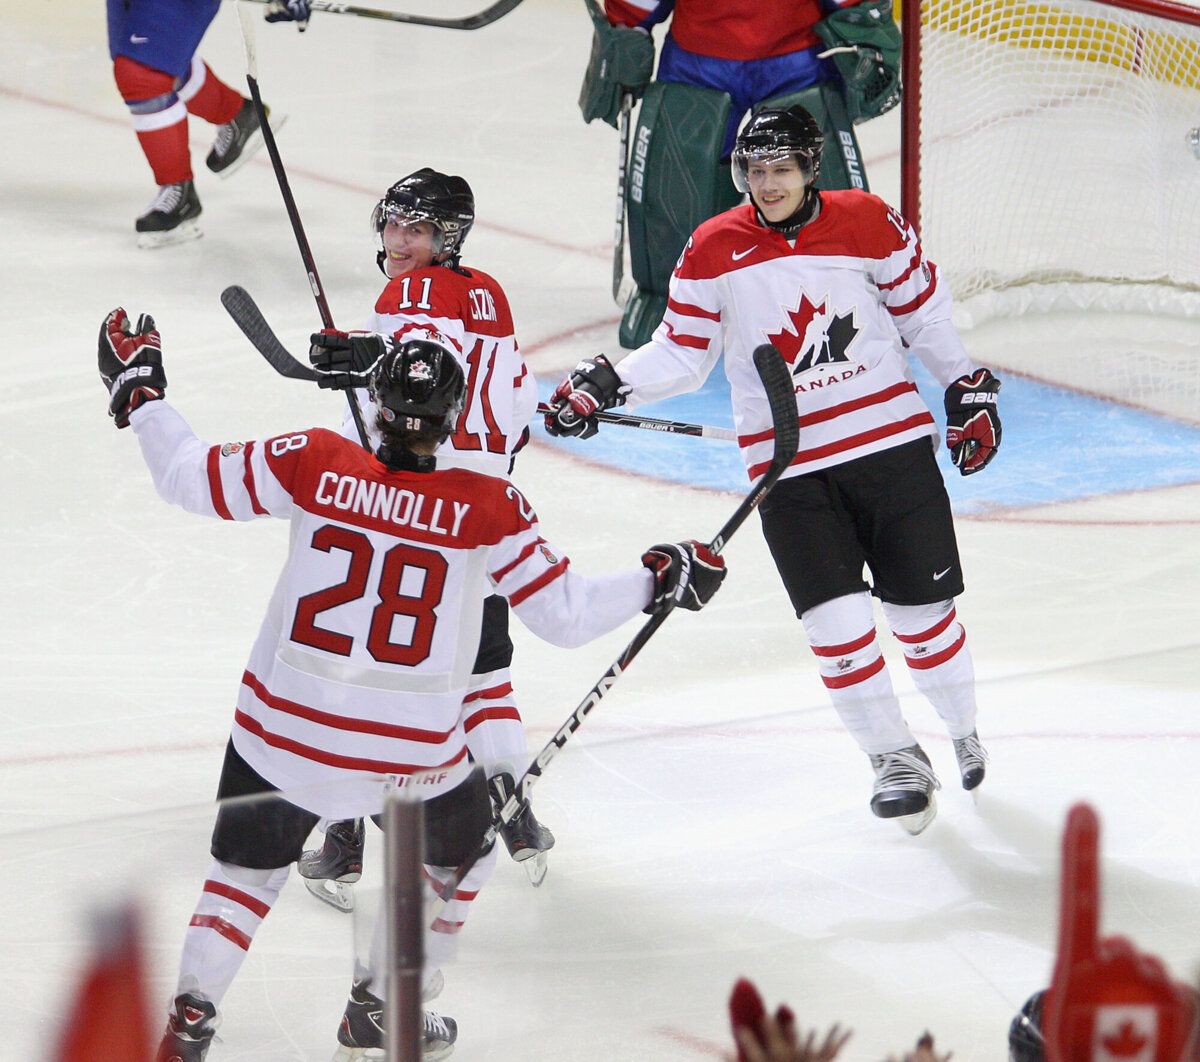 Канадские хоккеисты бездарно вылетели с чемпионата мира. Но повесили всех собак на организаторов